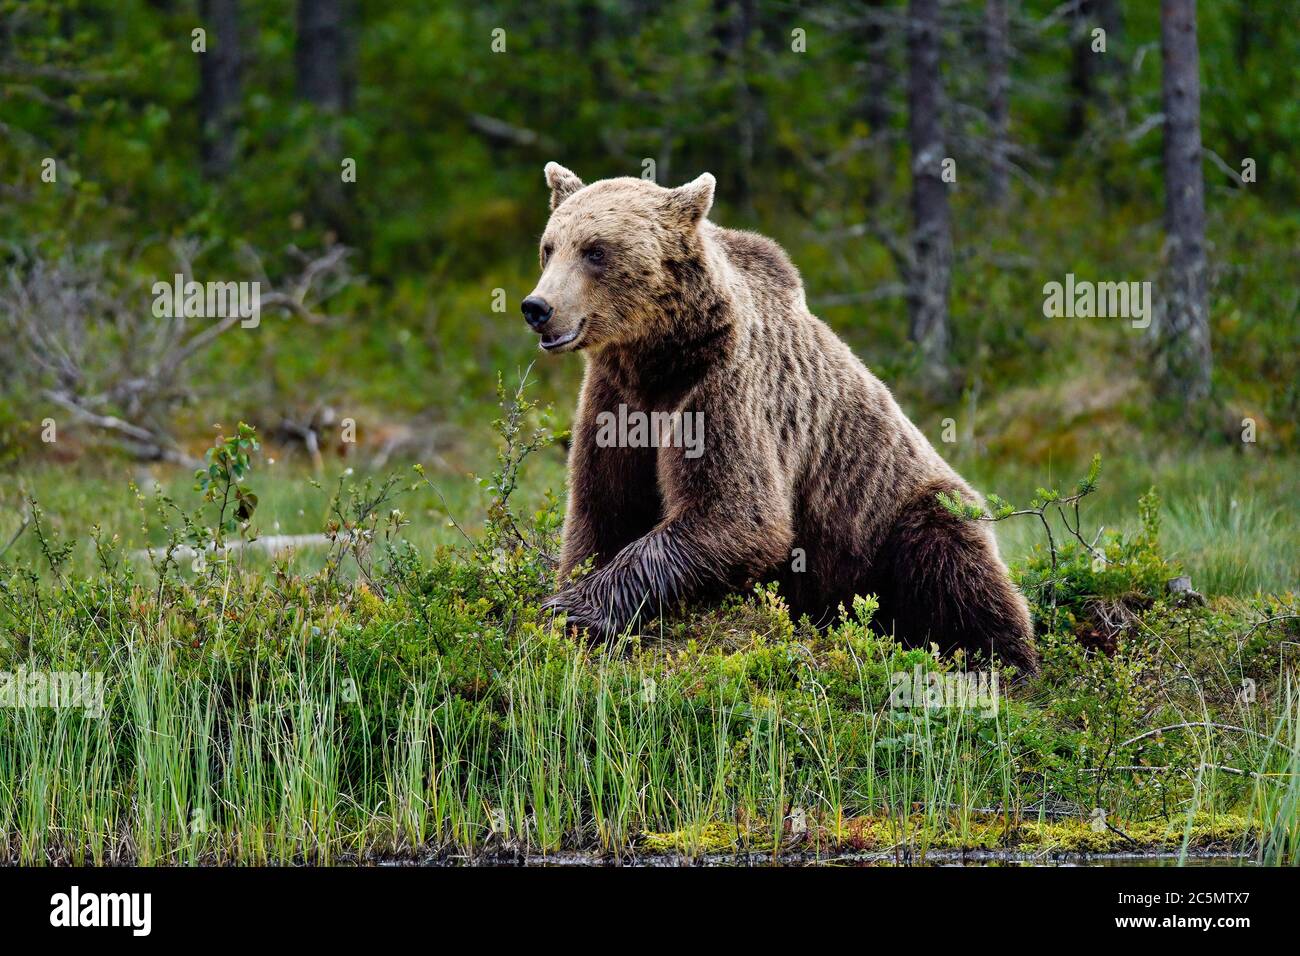 'Sitting Bull'. L'ours brun, c'est la fin de nuit et il est temps de prendre une pause et de processus. Banque D'Images